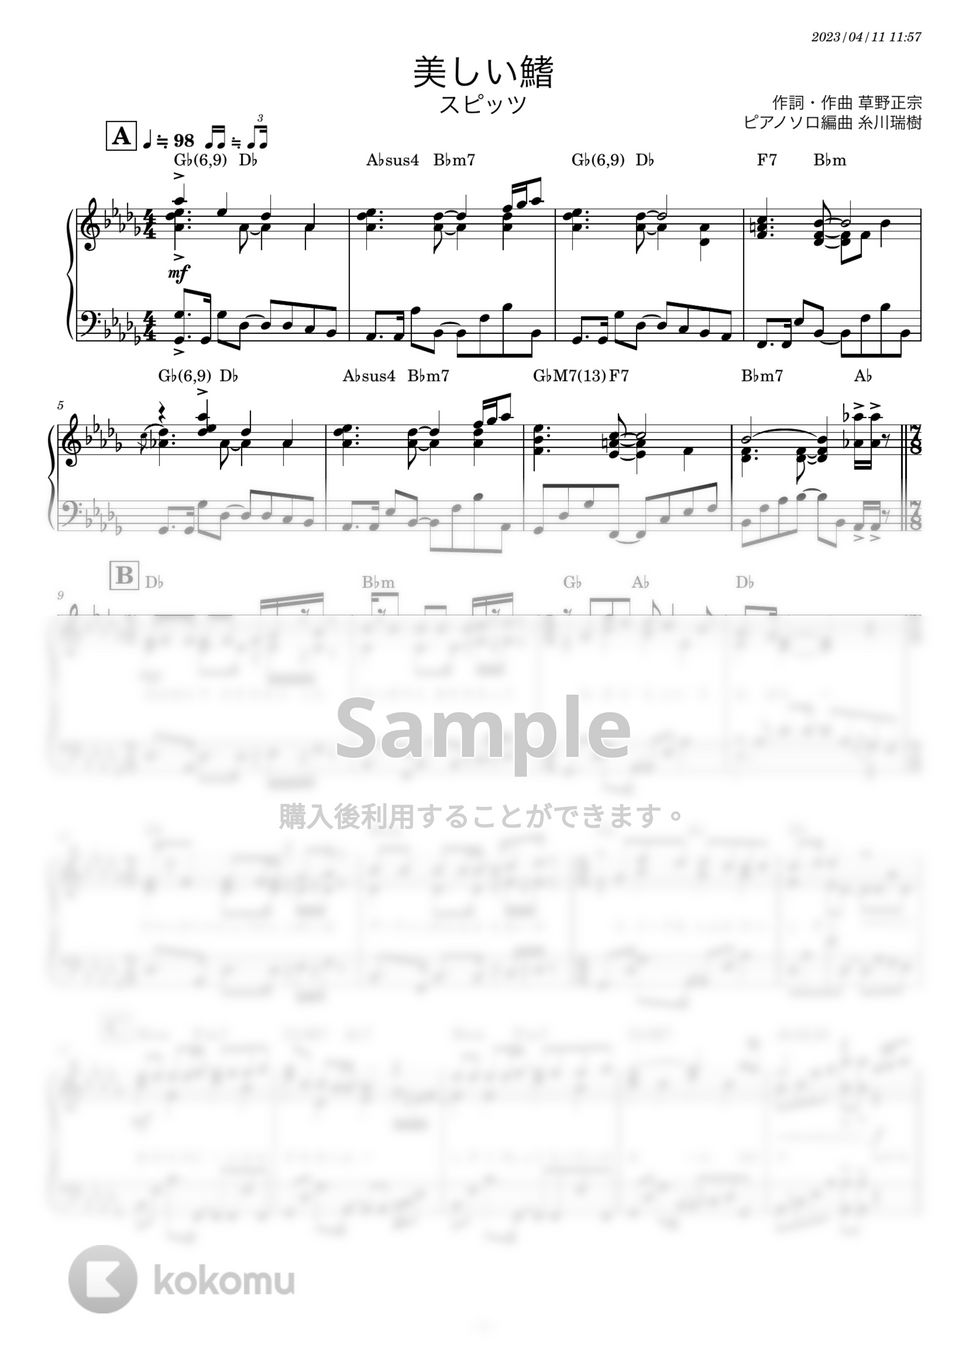 スピッツ - 美しい鰭 (ピアノソロ) by 糸川瑞樹